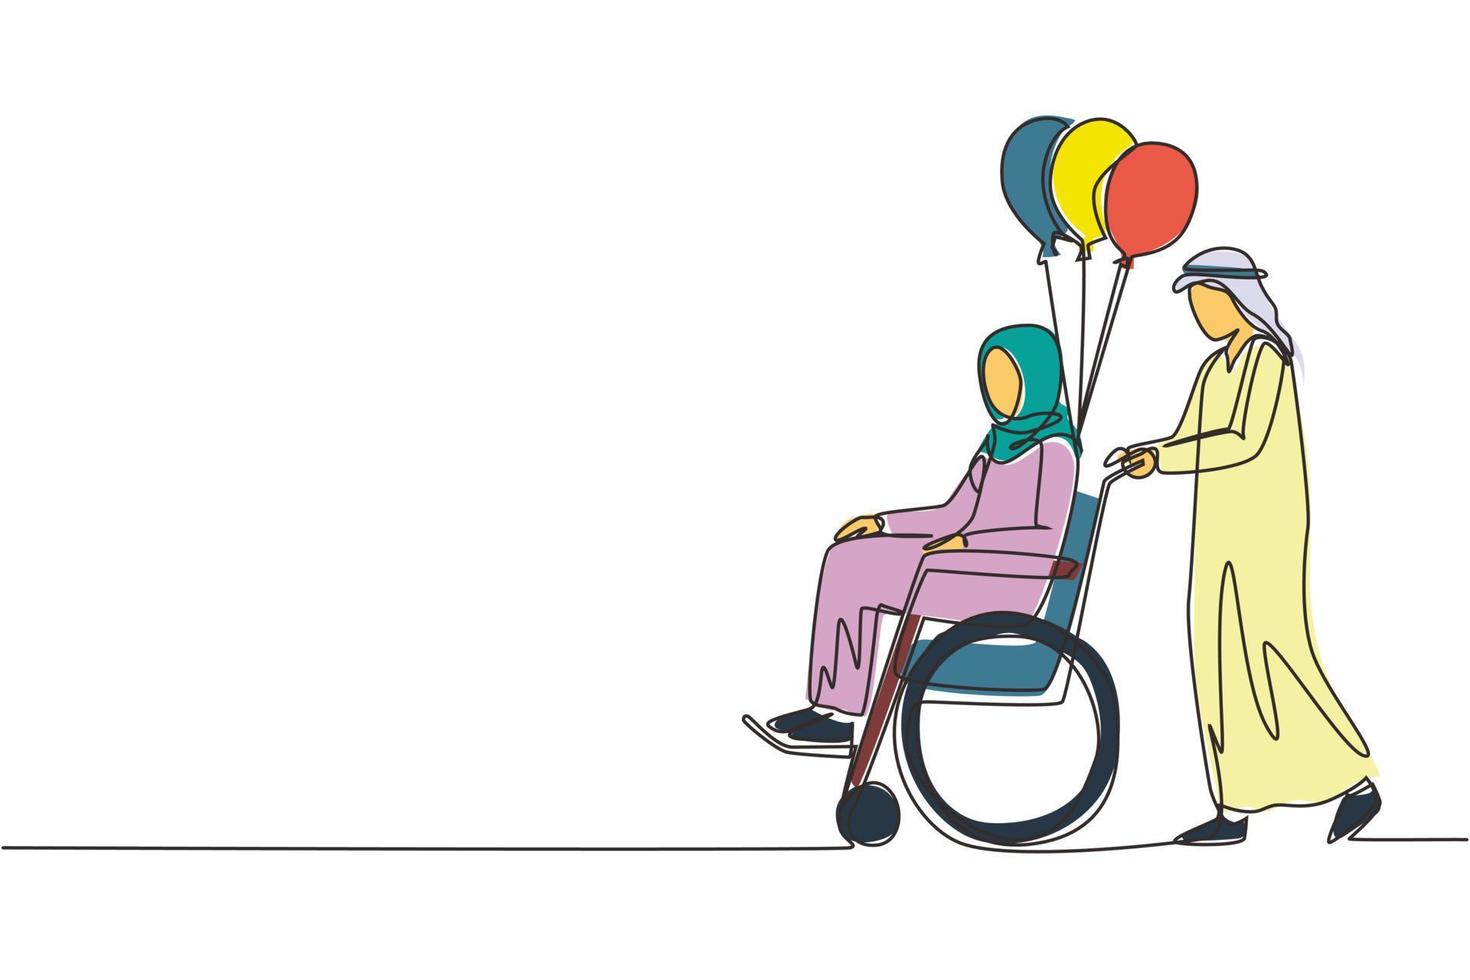 persone con disabilità di disegno a linea singola. l'uomo arabo porta una donna disabile in sedia a rotelle. accessibilità, attività riabilitative per invalidi. illustrazione vettoriale di disegno a linea continua